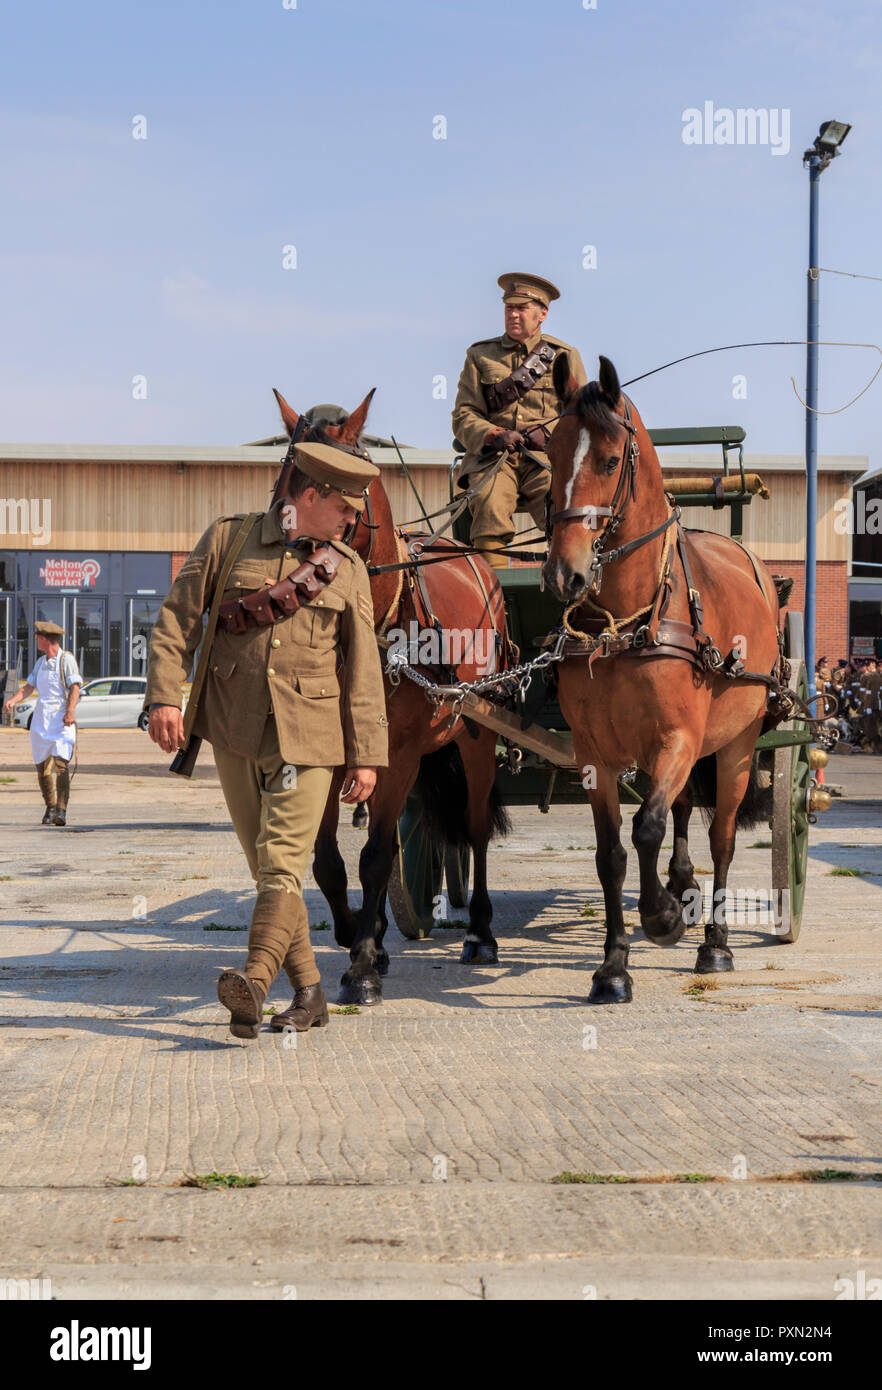 Deux coureurs de l'Armée royale Corps vétérinaire dans la première guerre mondiale, des uniformes authentiques, accompagner un WW1 et WW1 ambulance cheval vétérinaire Banque D'Images